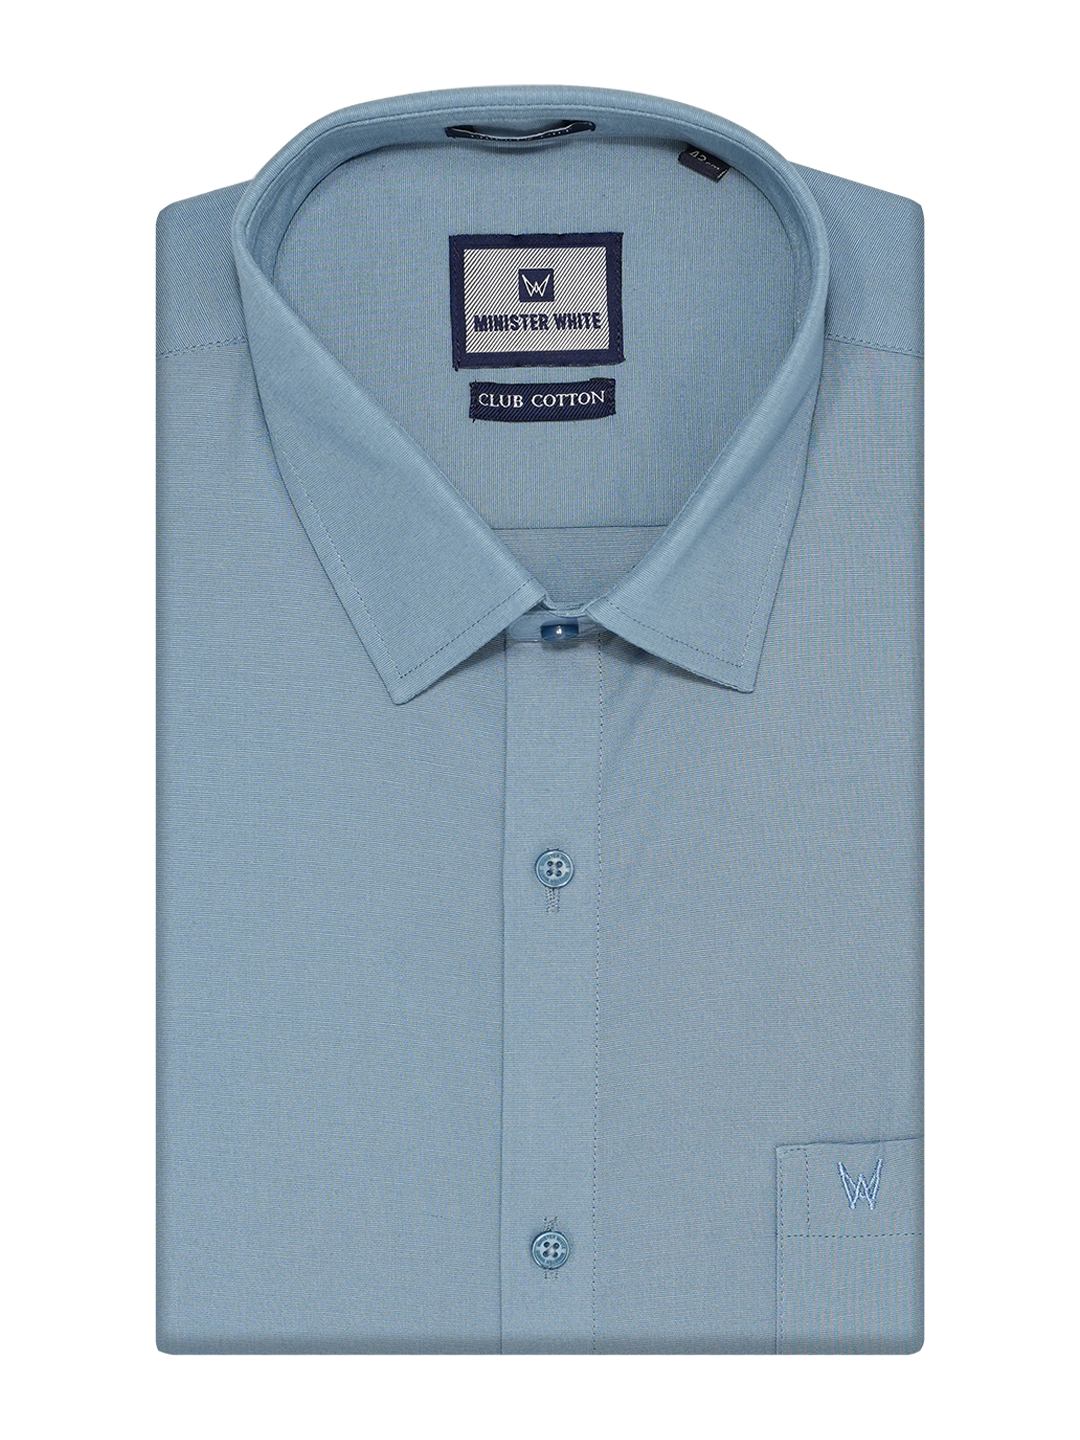 Mens Cotton Regular Fit Light Blue Colour Shirt Club Cotton